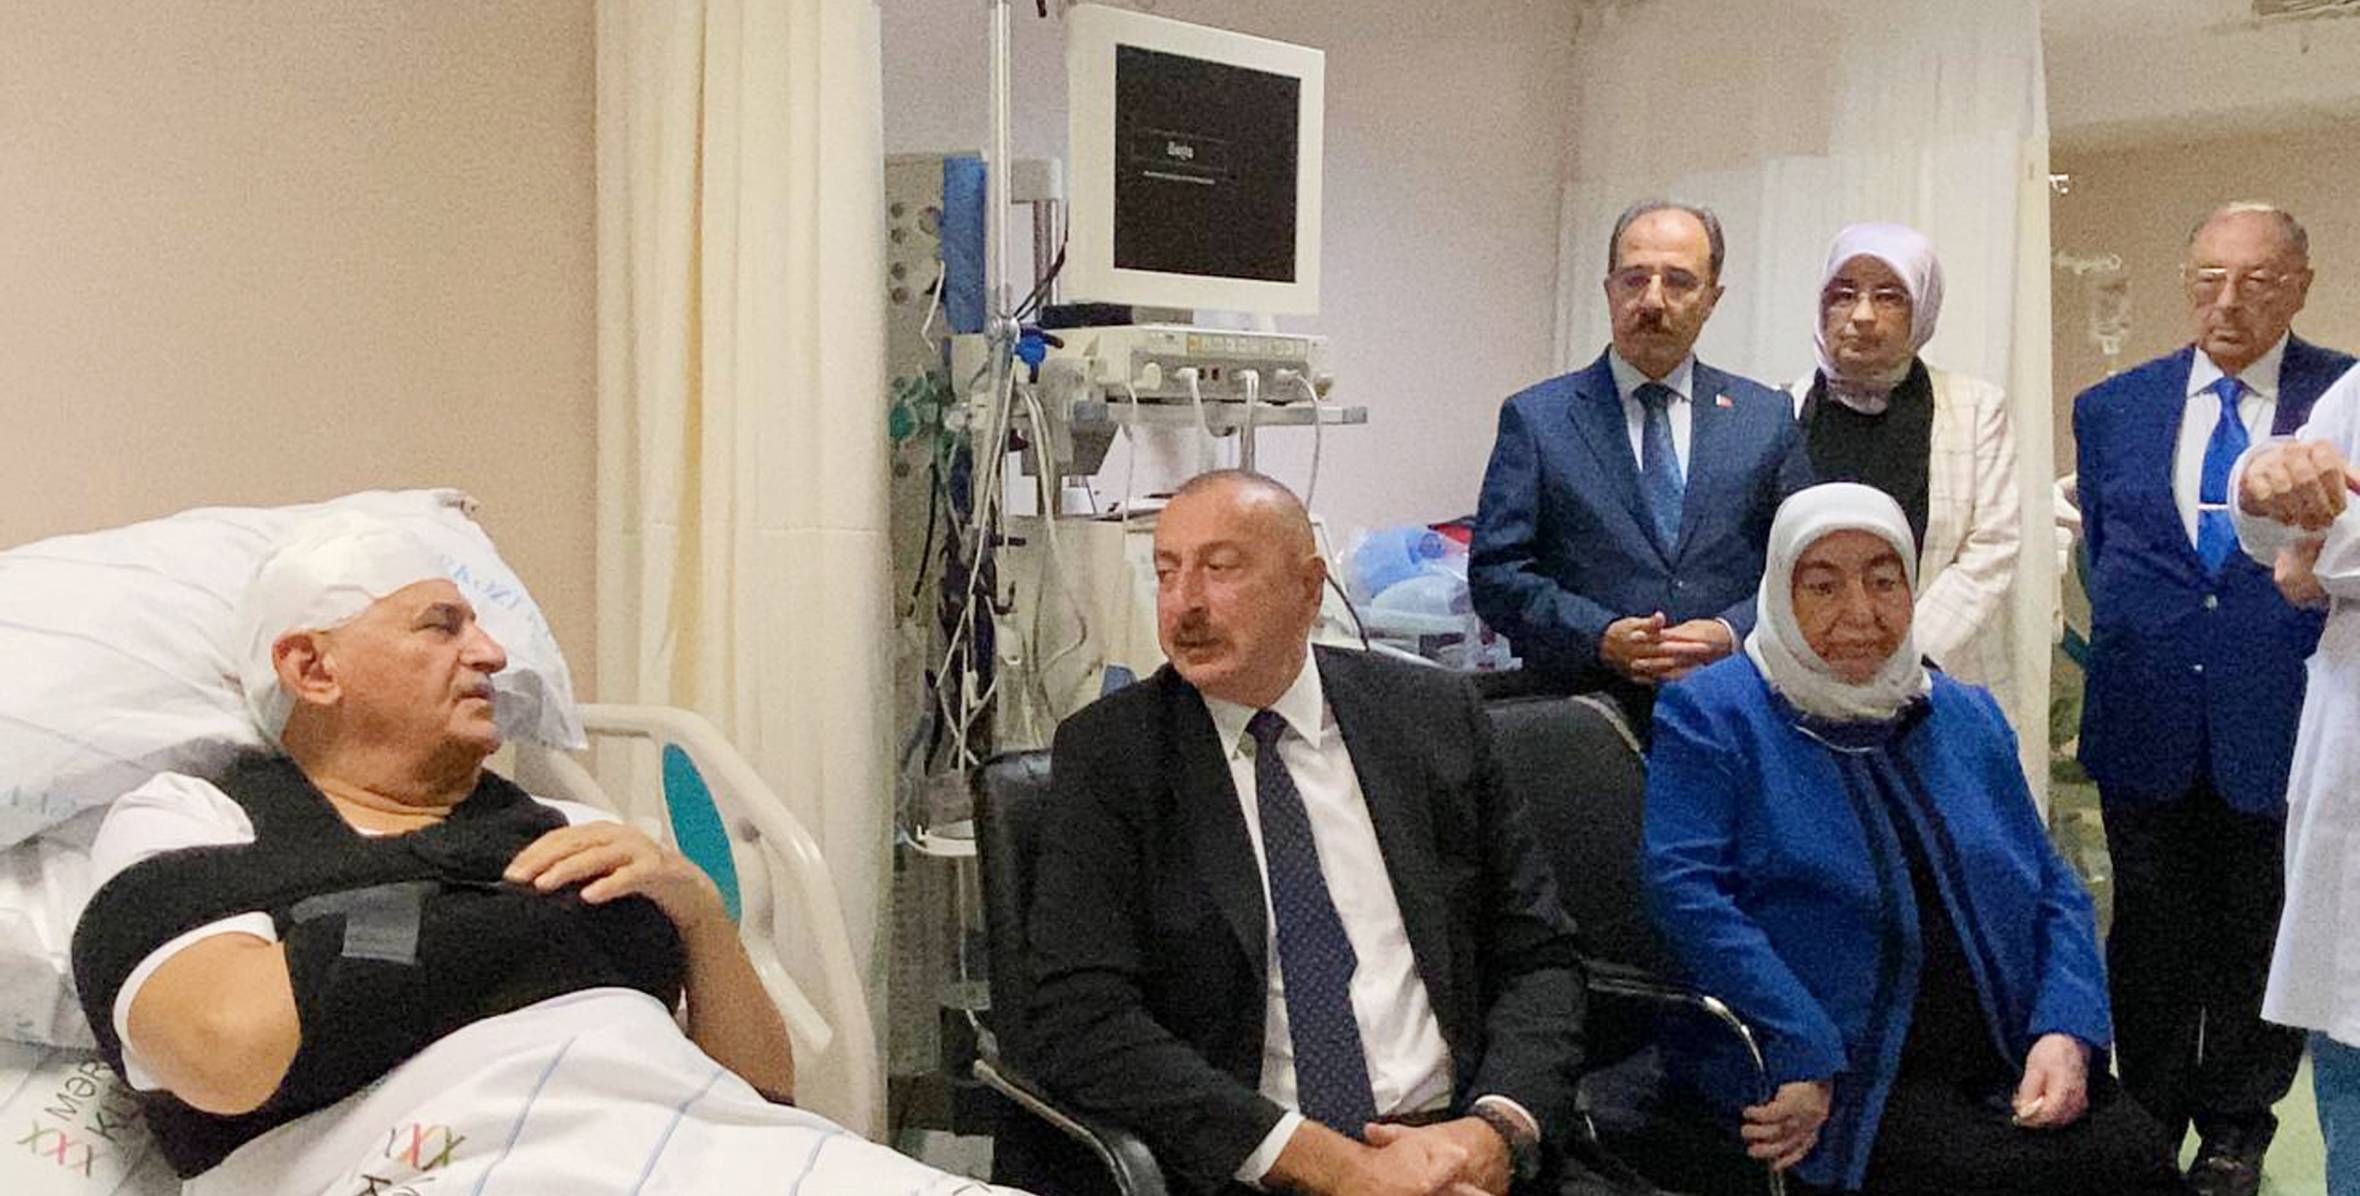 Ильхам Алиев навестил в больнице Бинали Йылдырыма, Шамиля Айрыма и телохранителя Огузхана Демирчи, попавших в дорожно-транспортное происшествие в нашей стране